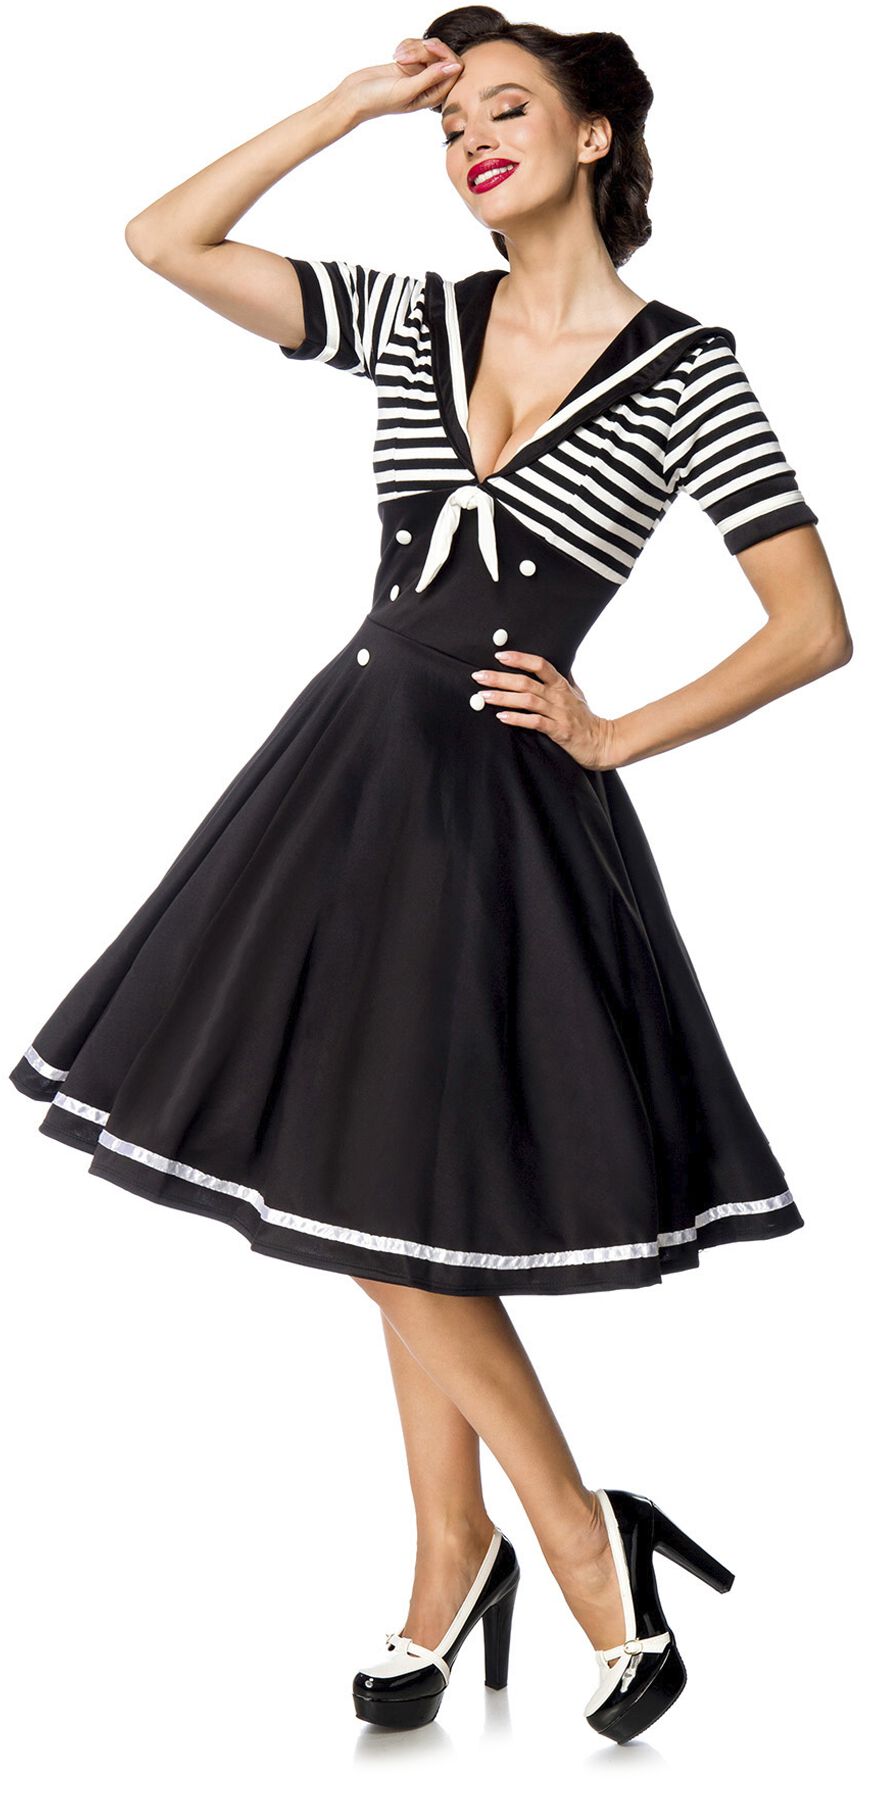 Belsira - Rockabilly Kleid knielang - Swing-Kleid im Marinelook - S bis 4XL - für Damen - Größe XXL - schwarz/weiß